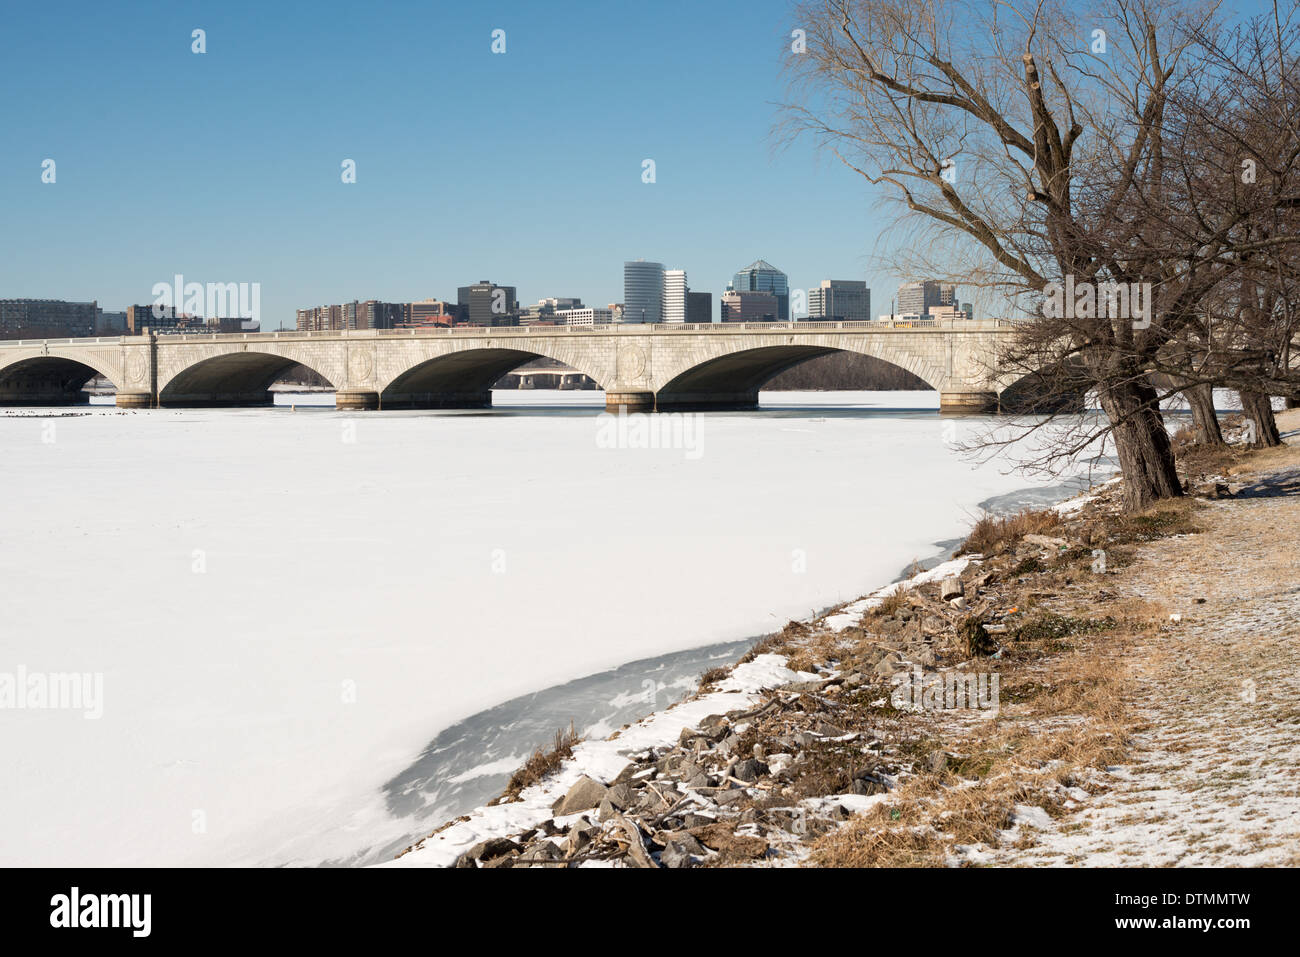 WASHINGTON DC, USA - Arlington Memorial Bridge überspannt eine Fläche von Eis und Schnee - Potomac von Washington D.C. in Arlington, Virginia, mit den Gebäuden von Rosslyn in der Ferne sichtbar. Die Potomac in Washington DC ausgeführt wird eingefroren und mit einer Schicht von Schnee bedeckt. Die Region hat einen ungewöhnlich kalten Winter erlebt, mit anhaltend niedrigen Temperaturen. Stockfoto